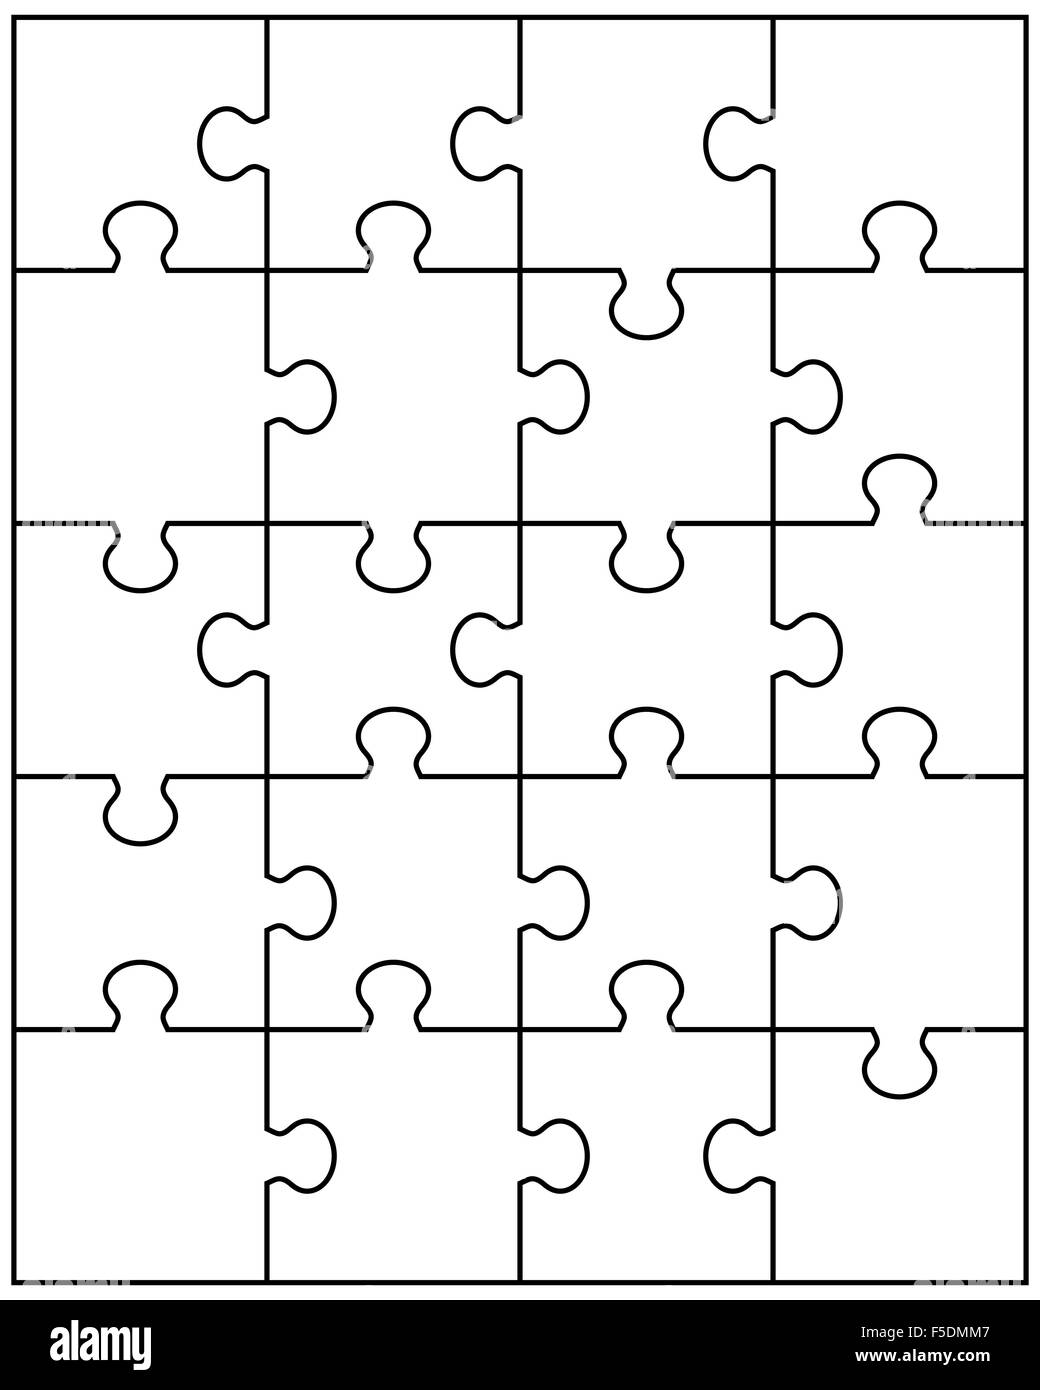 Vektor-Illustration der großen weißen Puzzle, Einzelteile Stockfotografie -  Alamy